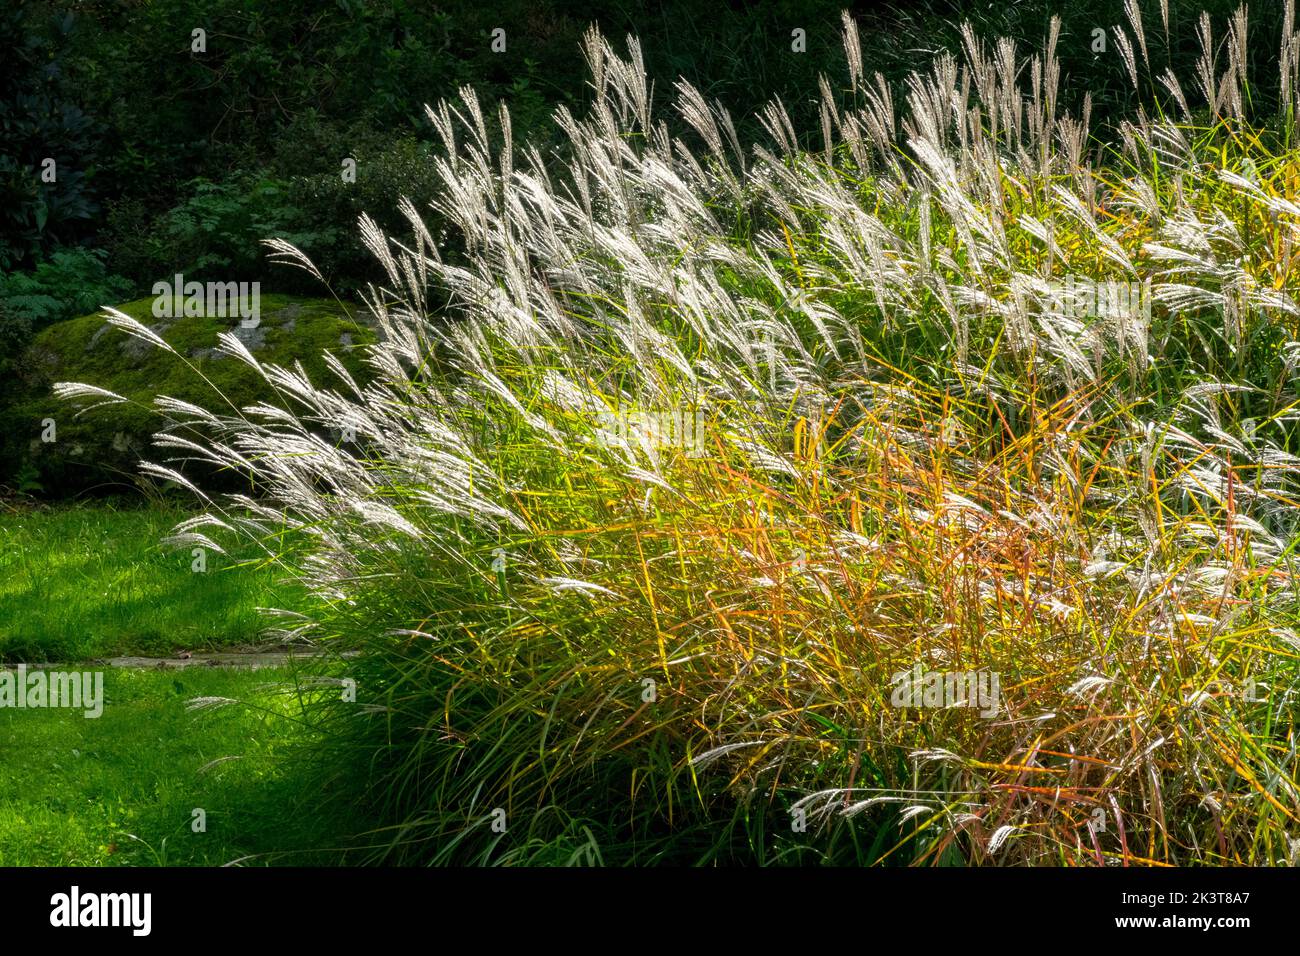 Miscanthus sinensis 'purpurpurascens' Otoño Miscanthus sinensis en jardín céspedes otoñales Flame Grass garden Eulalia Foto de stock